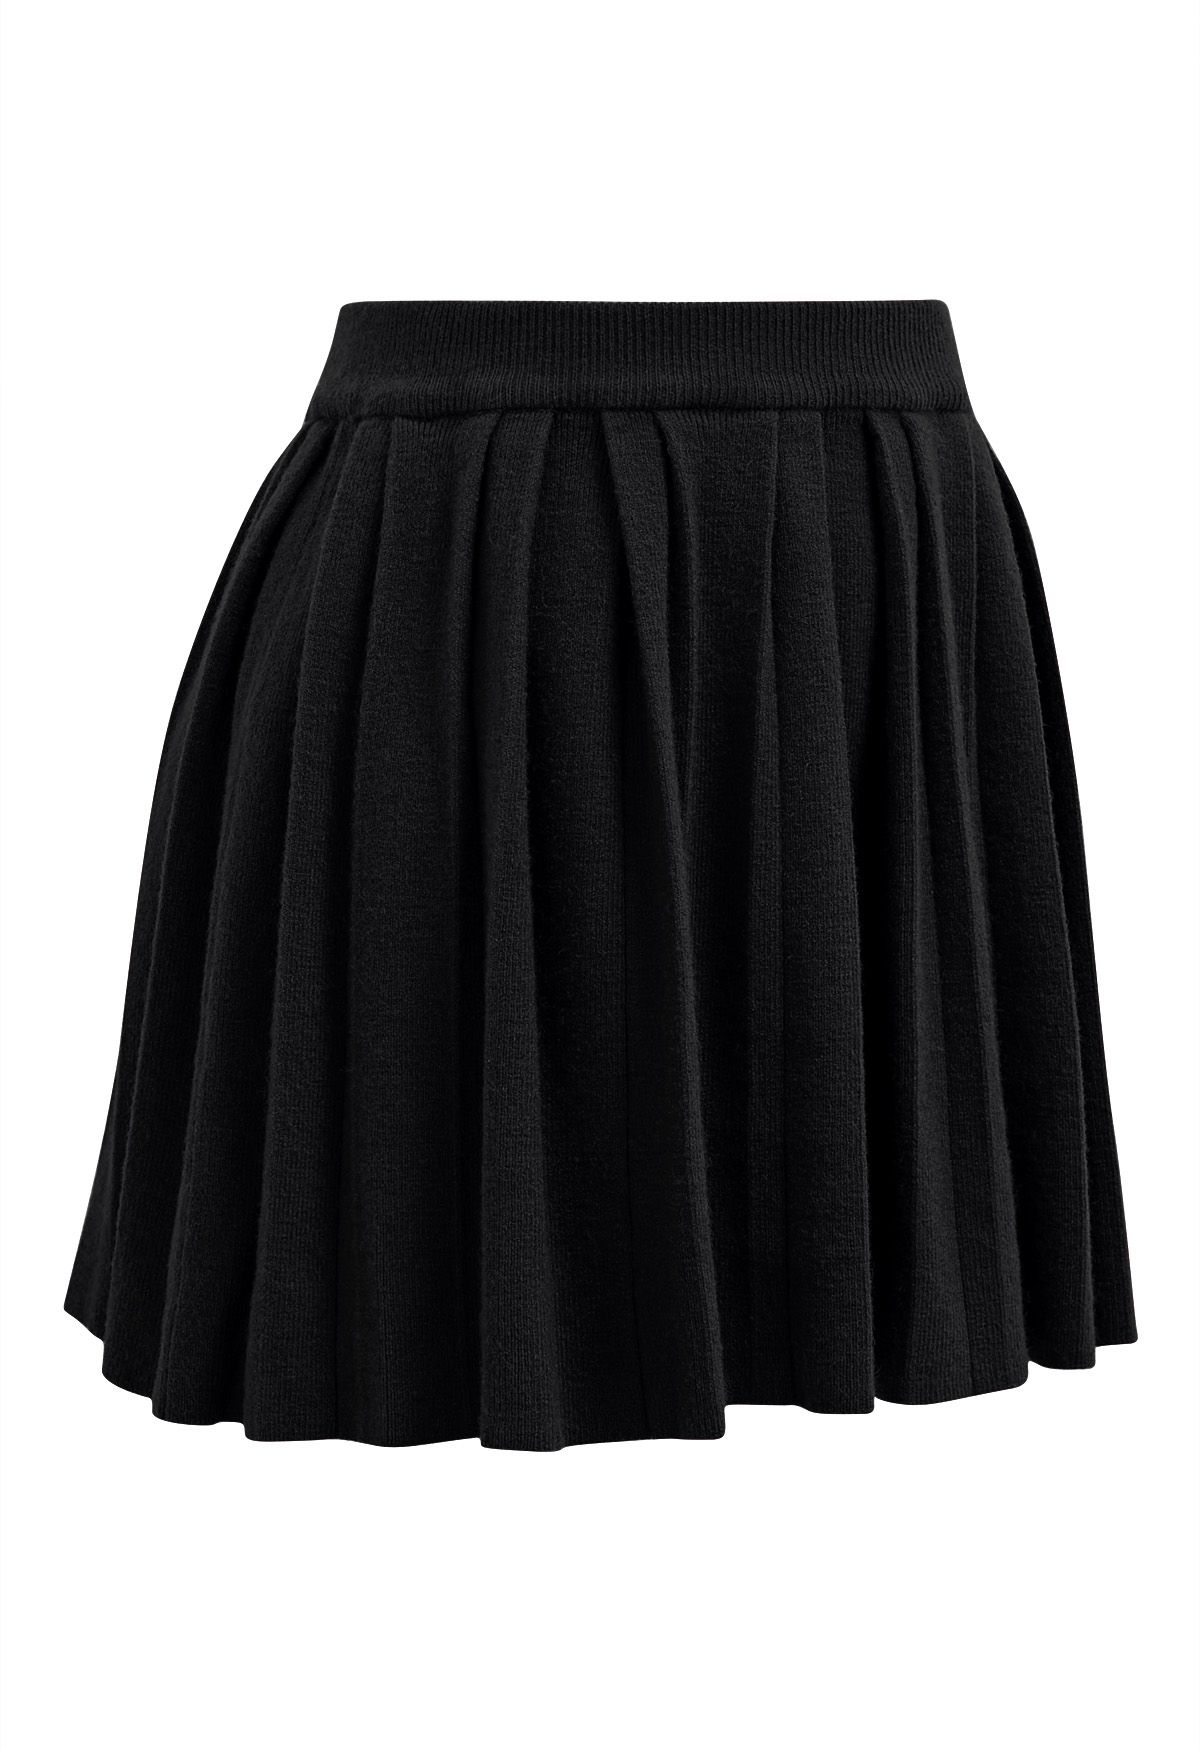 Minifalda plisada con cintura elástica en negro